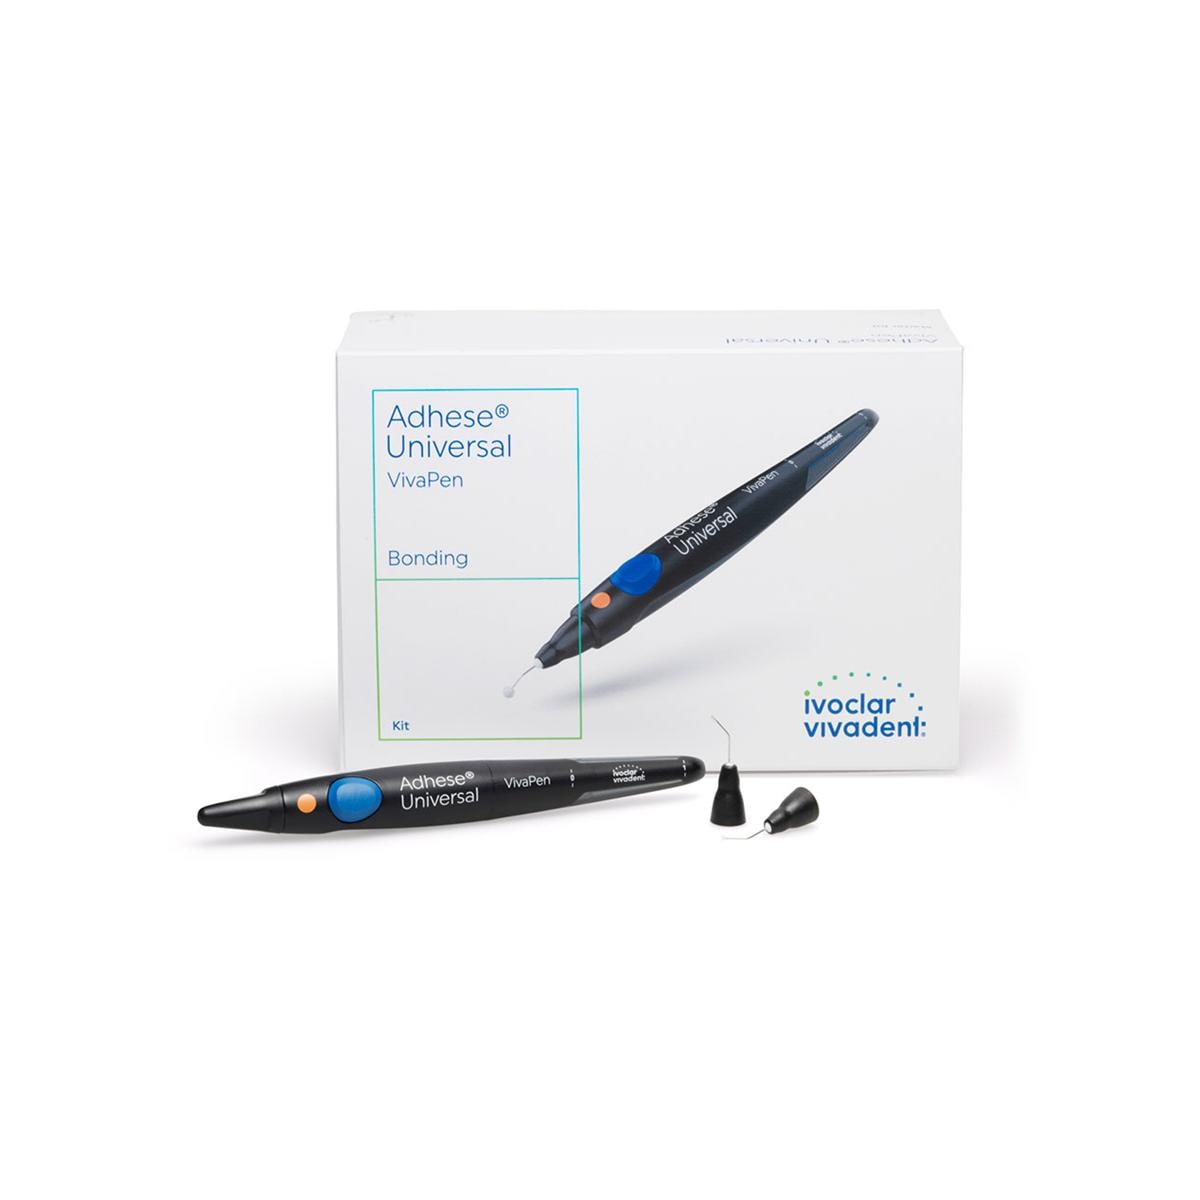 Lix 3D pen – Nuevo bolígrafo para hacer croquis 3D